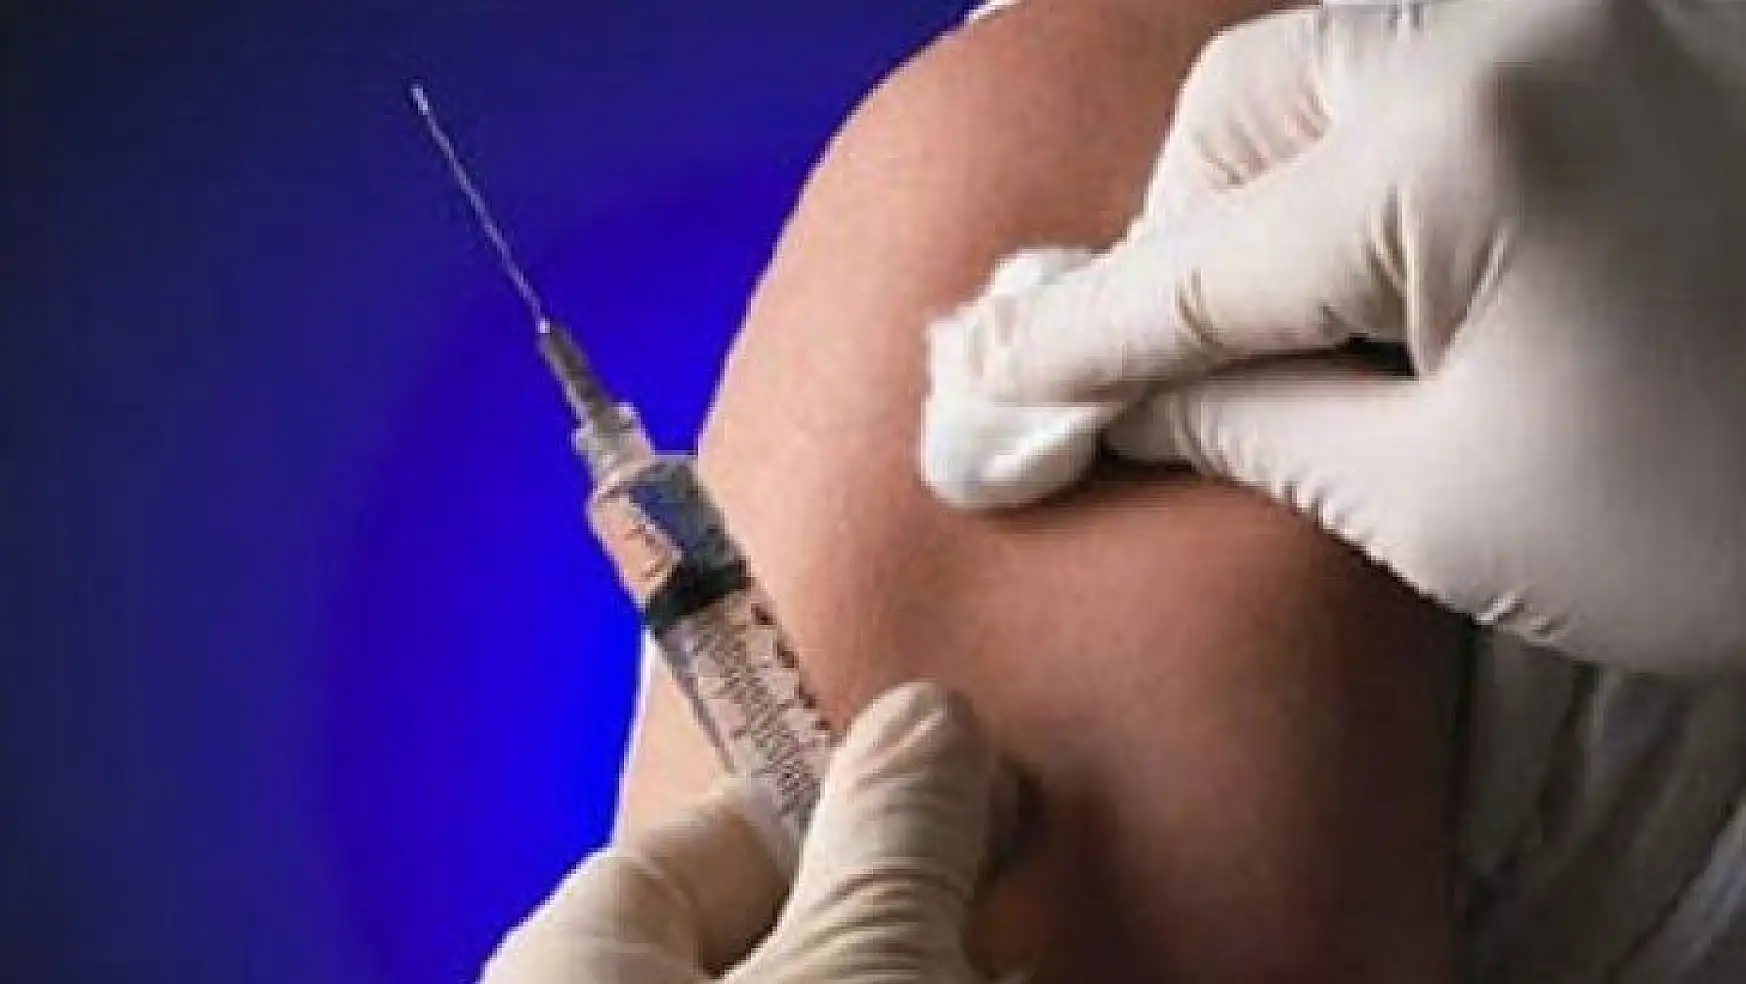 Muğla İl Sağlık Müdürlüğü'nden aşı açıklaması